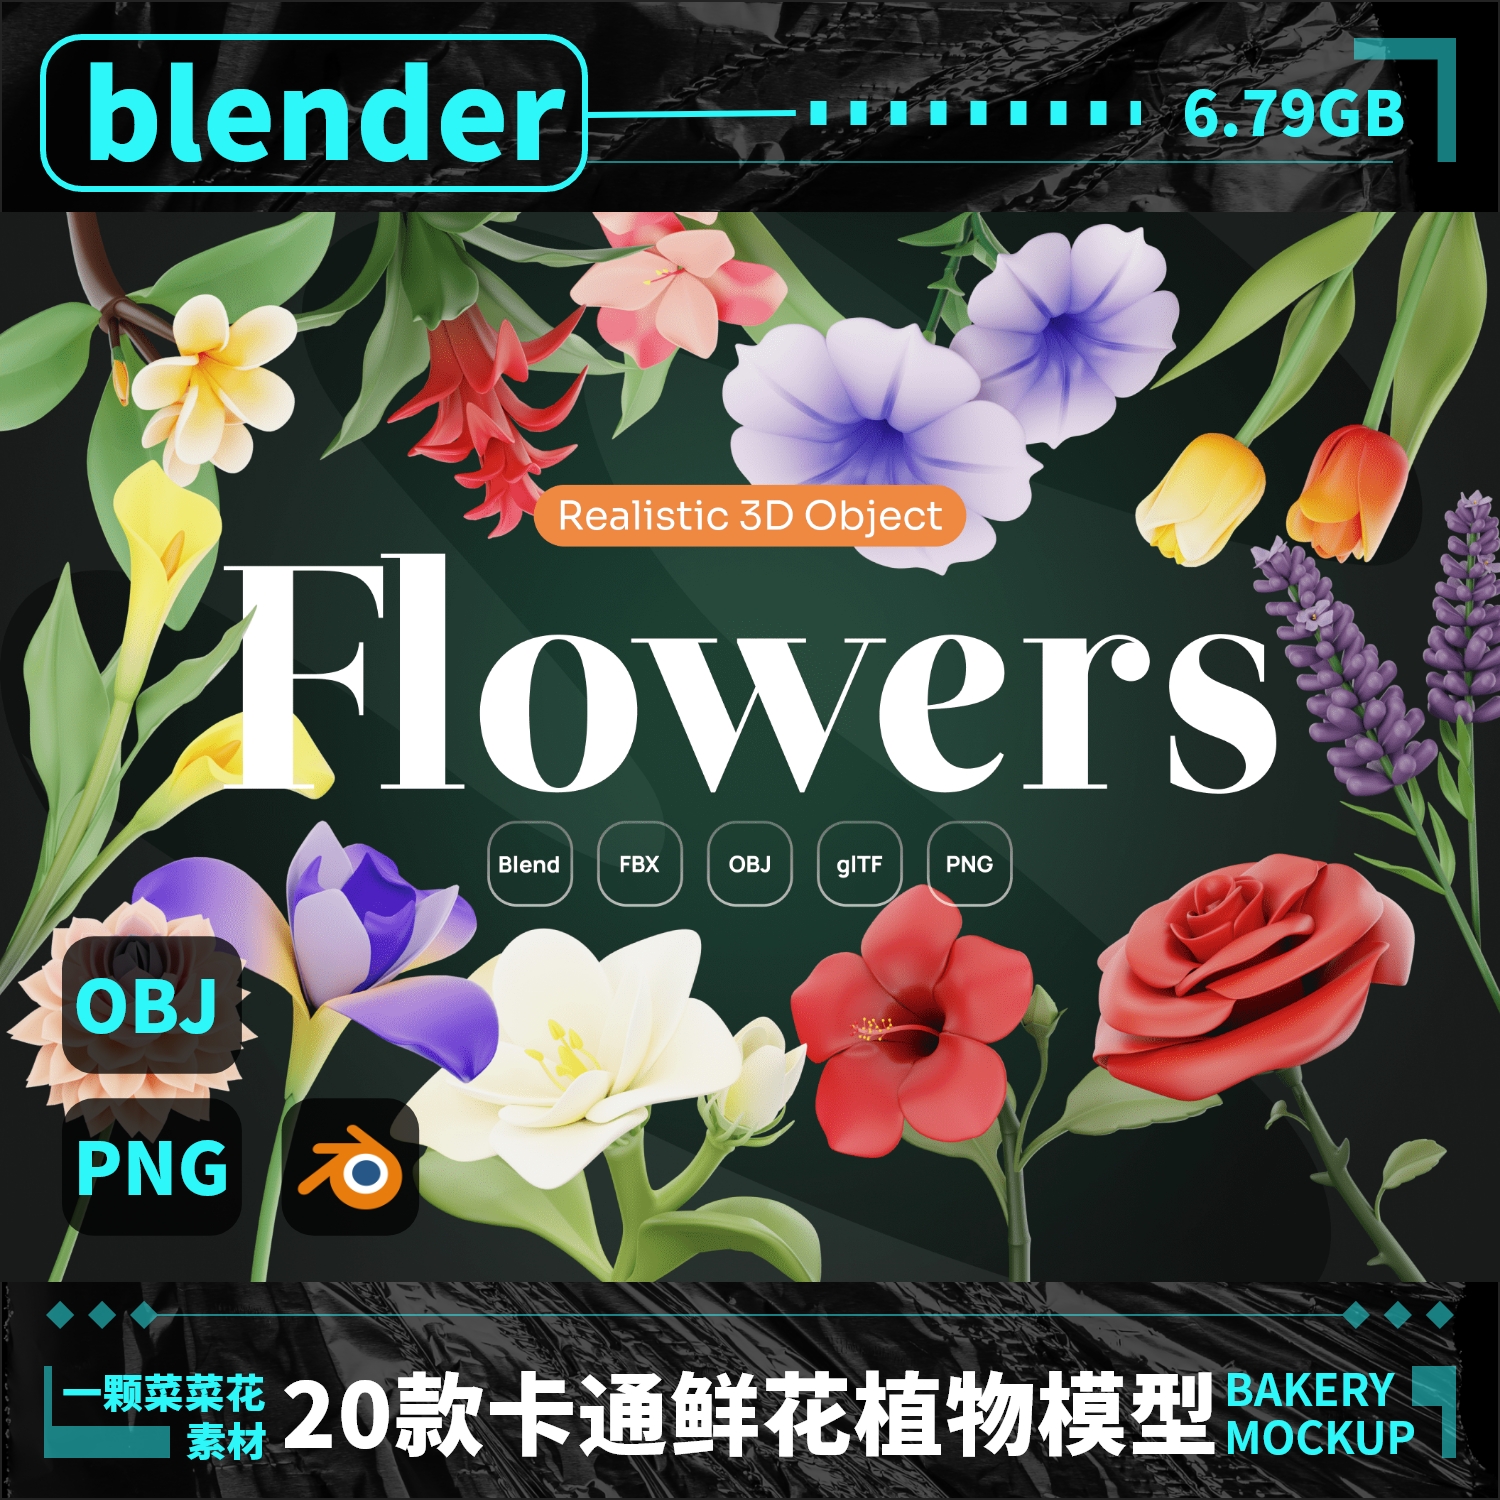 blender obj卡通鲜花花朵植物向日葵荷花模型3D素材设计元素 A170